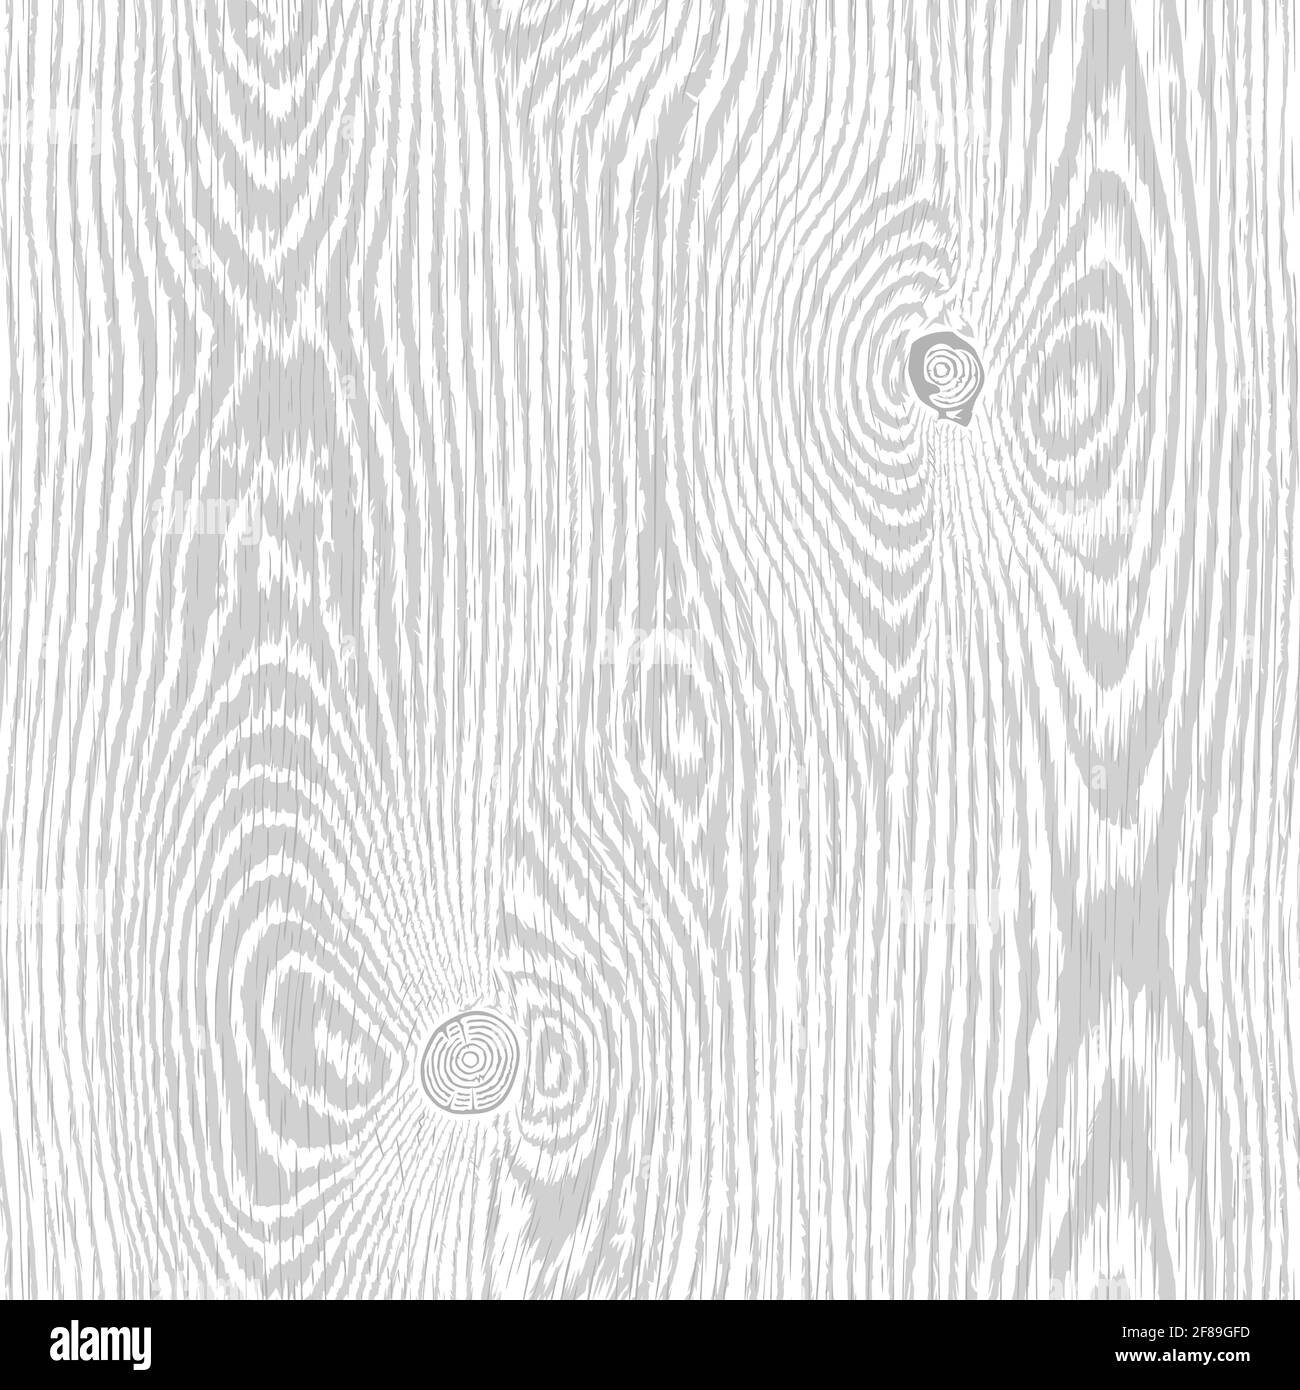 Texture gỗ màu xám nhạt có độ bền và sự tự nhiên đặc trưng. Hãy xem hình ảnh liên quan để cảm nhận được sự tuyệt vời của texture này trong thiết kế nội thất.